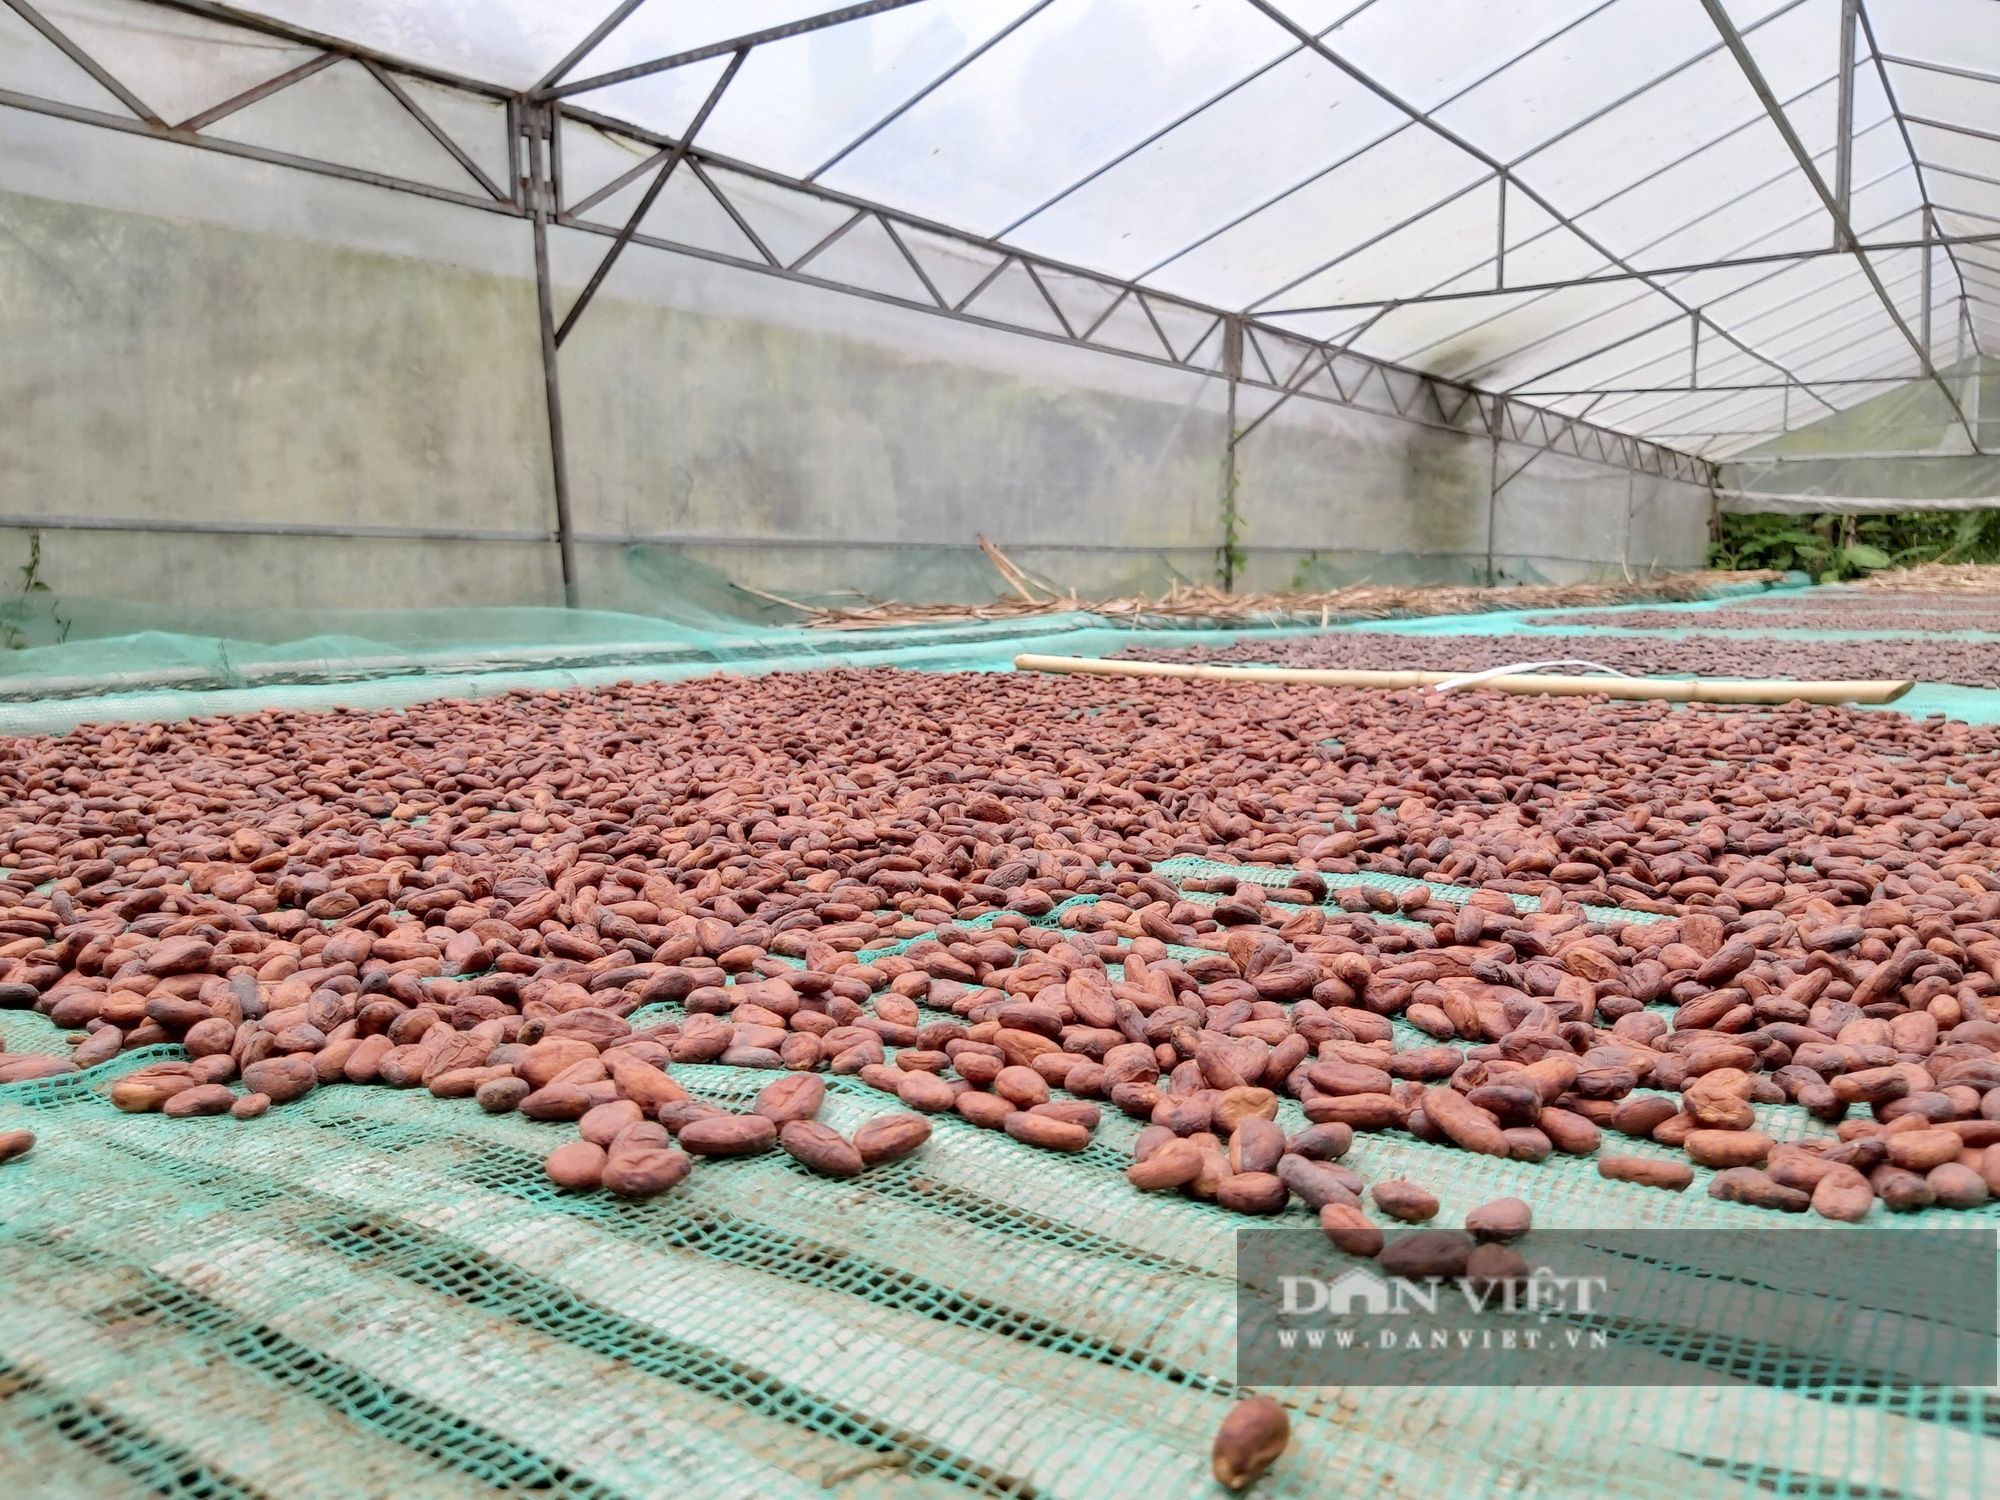 Chán làm tiến sĩ, Phạm Hồng Phước bỏ nghề về vườn tạo ra dòng socola đắt nhất Việt Nam - Ảnh 4.